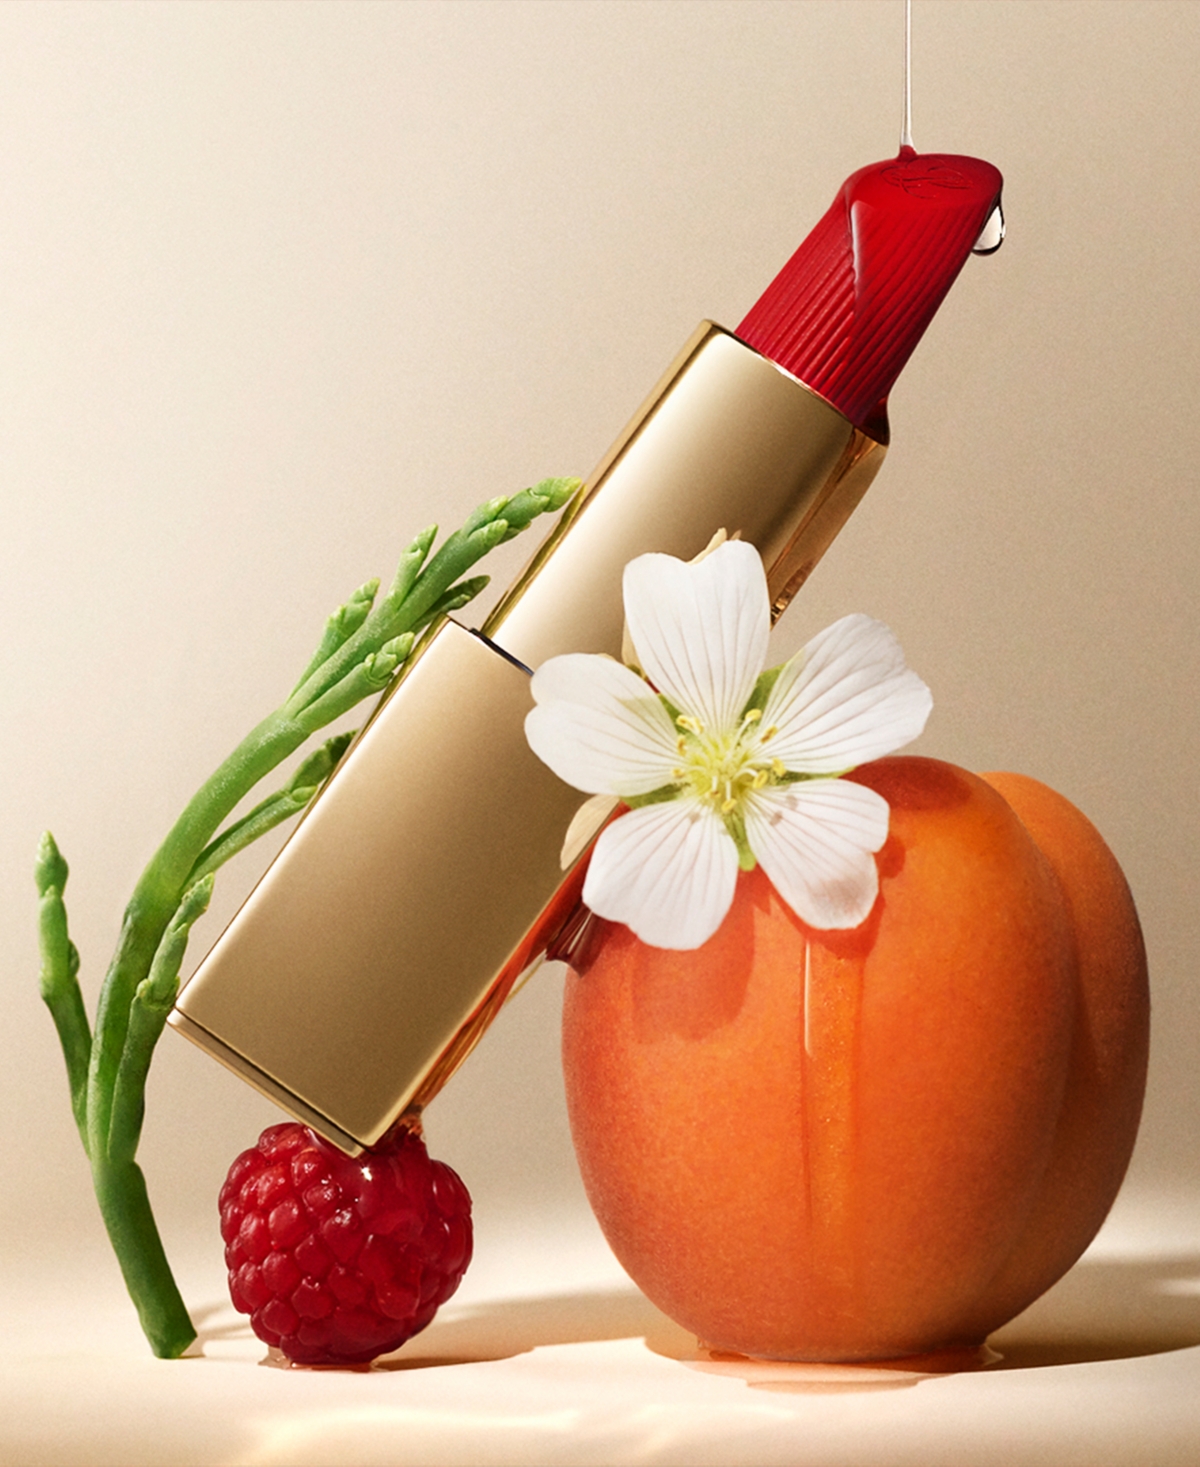 Shop Estée Lauder Pure Color Lipstick, Matte In Visionary